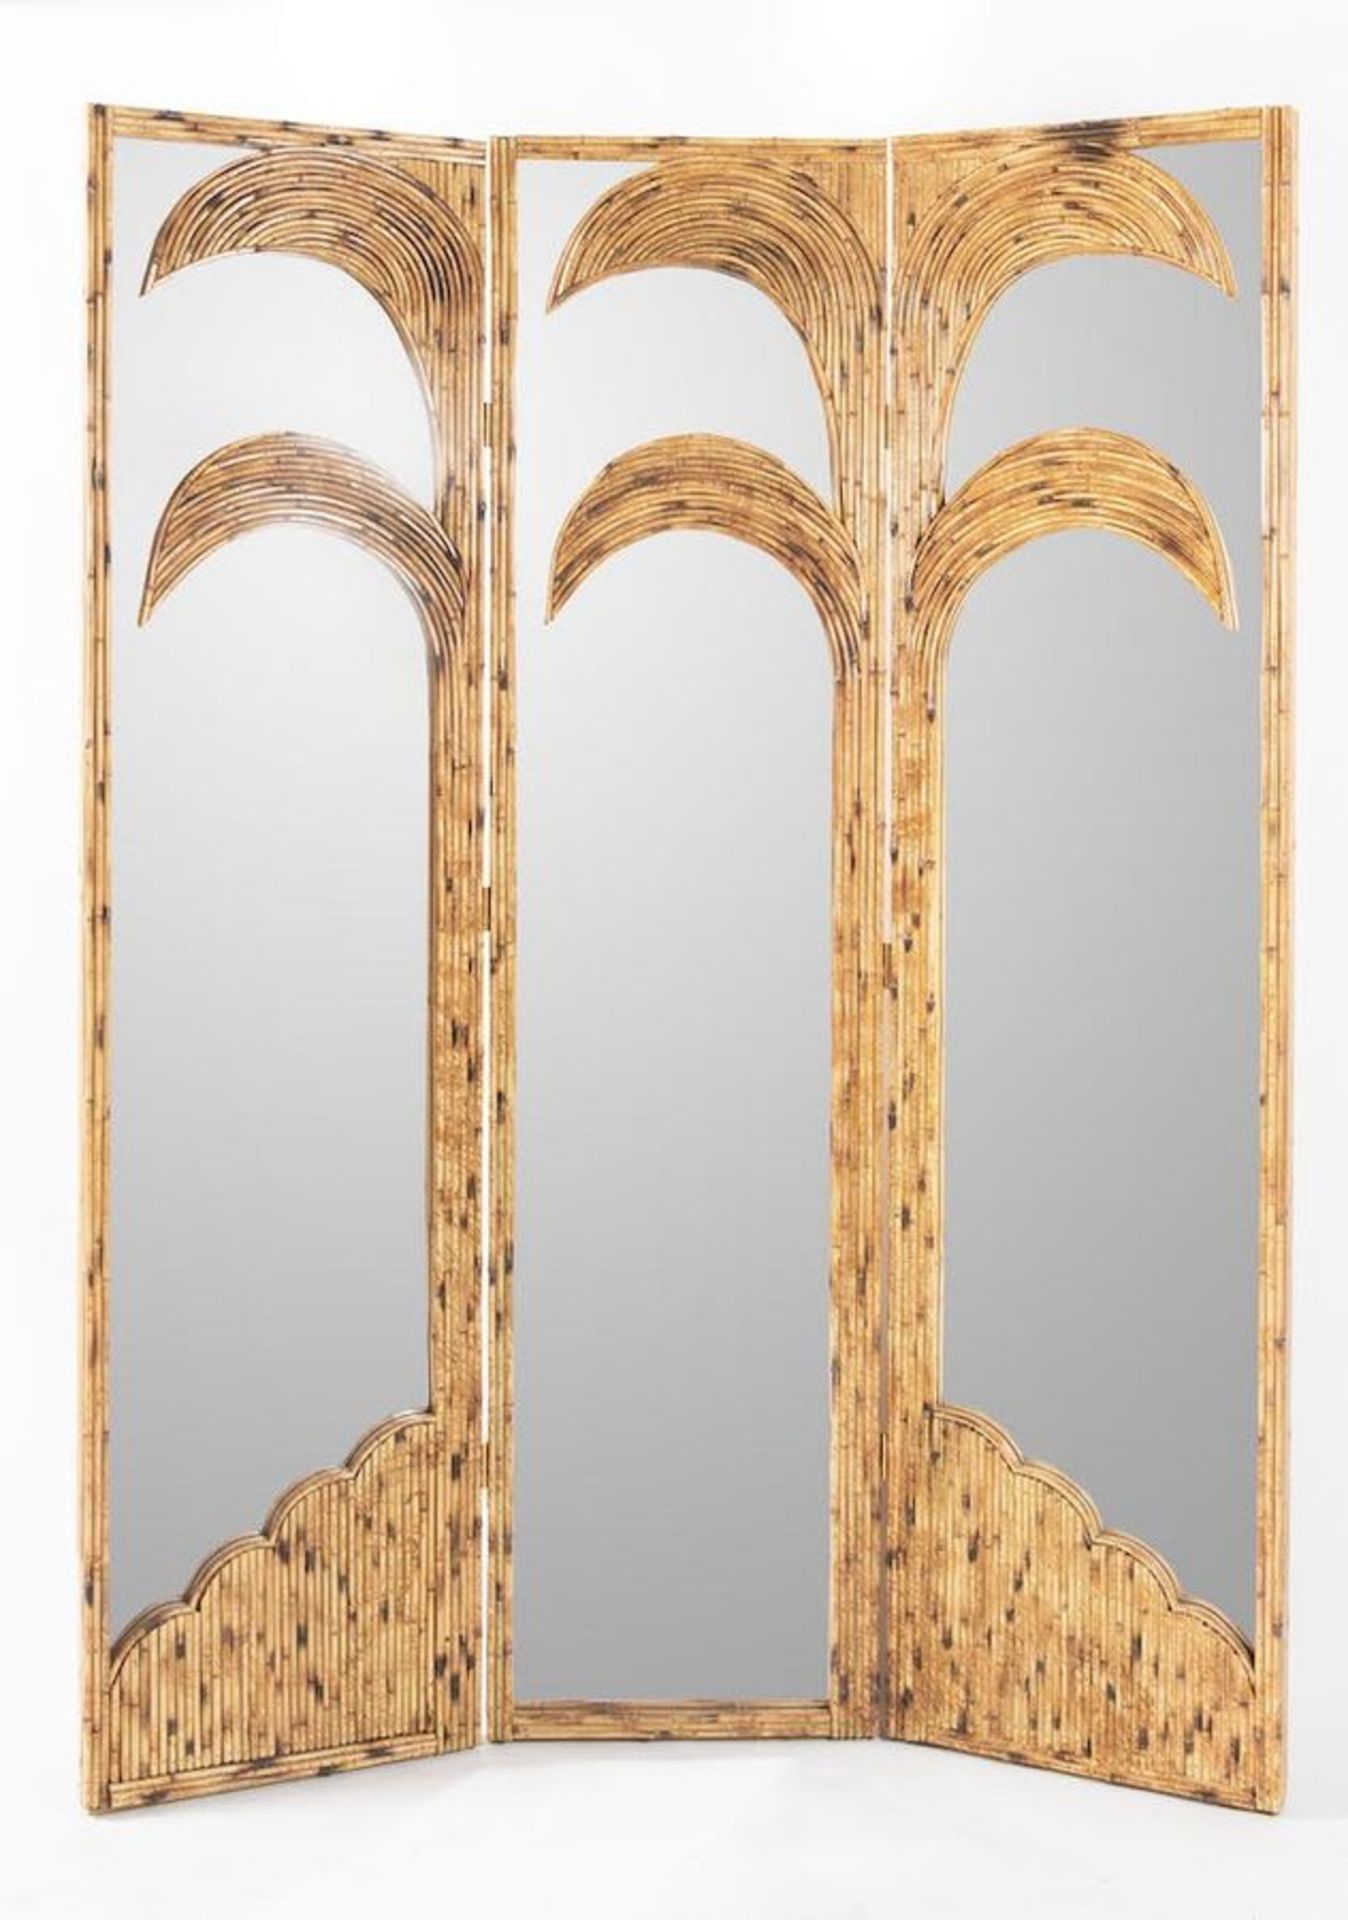 VIVAI DEL SUD, attr. Paravento in bamboo e canna d’india con specchi. Prod. Italia, 1970 ca. Cm 215x